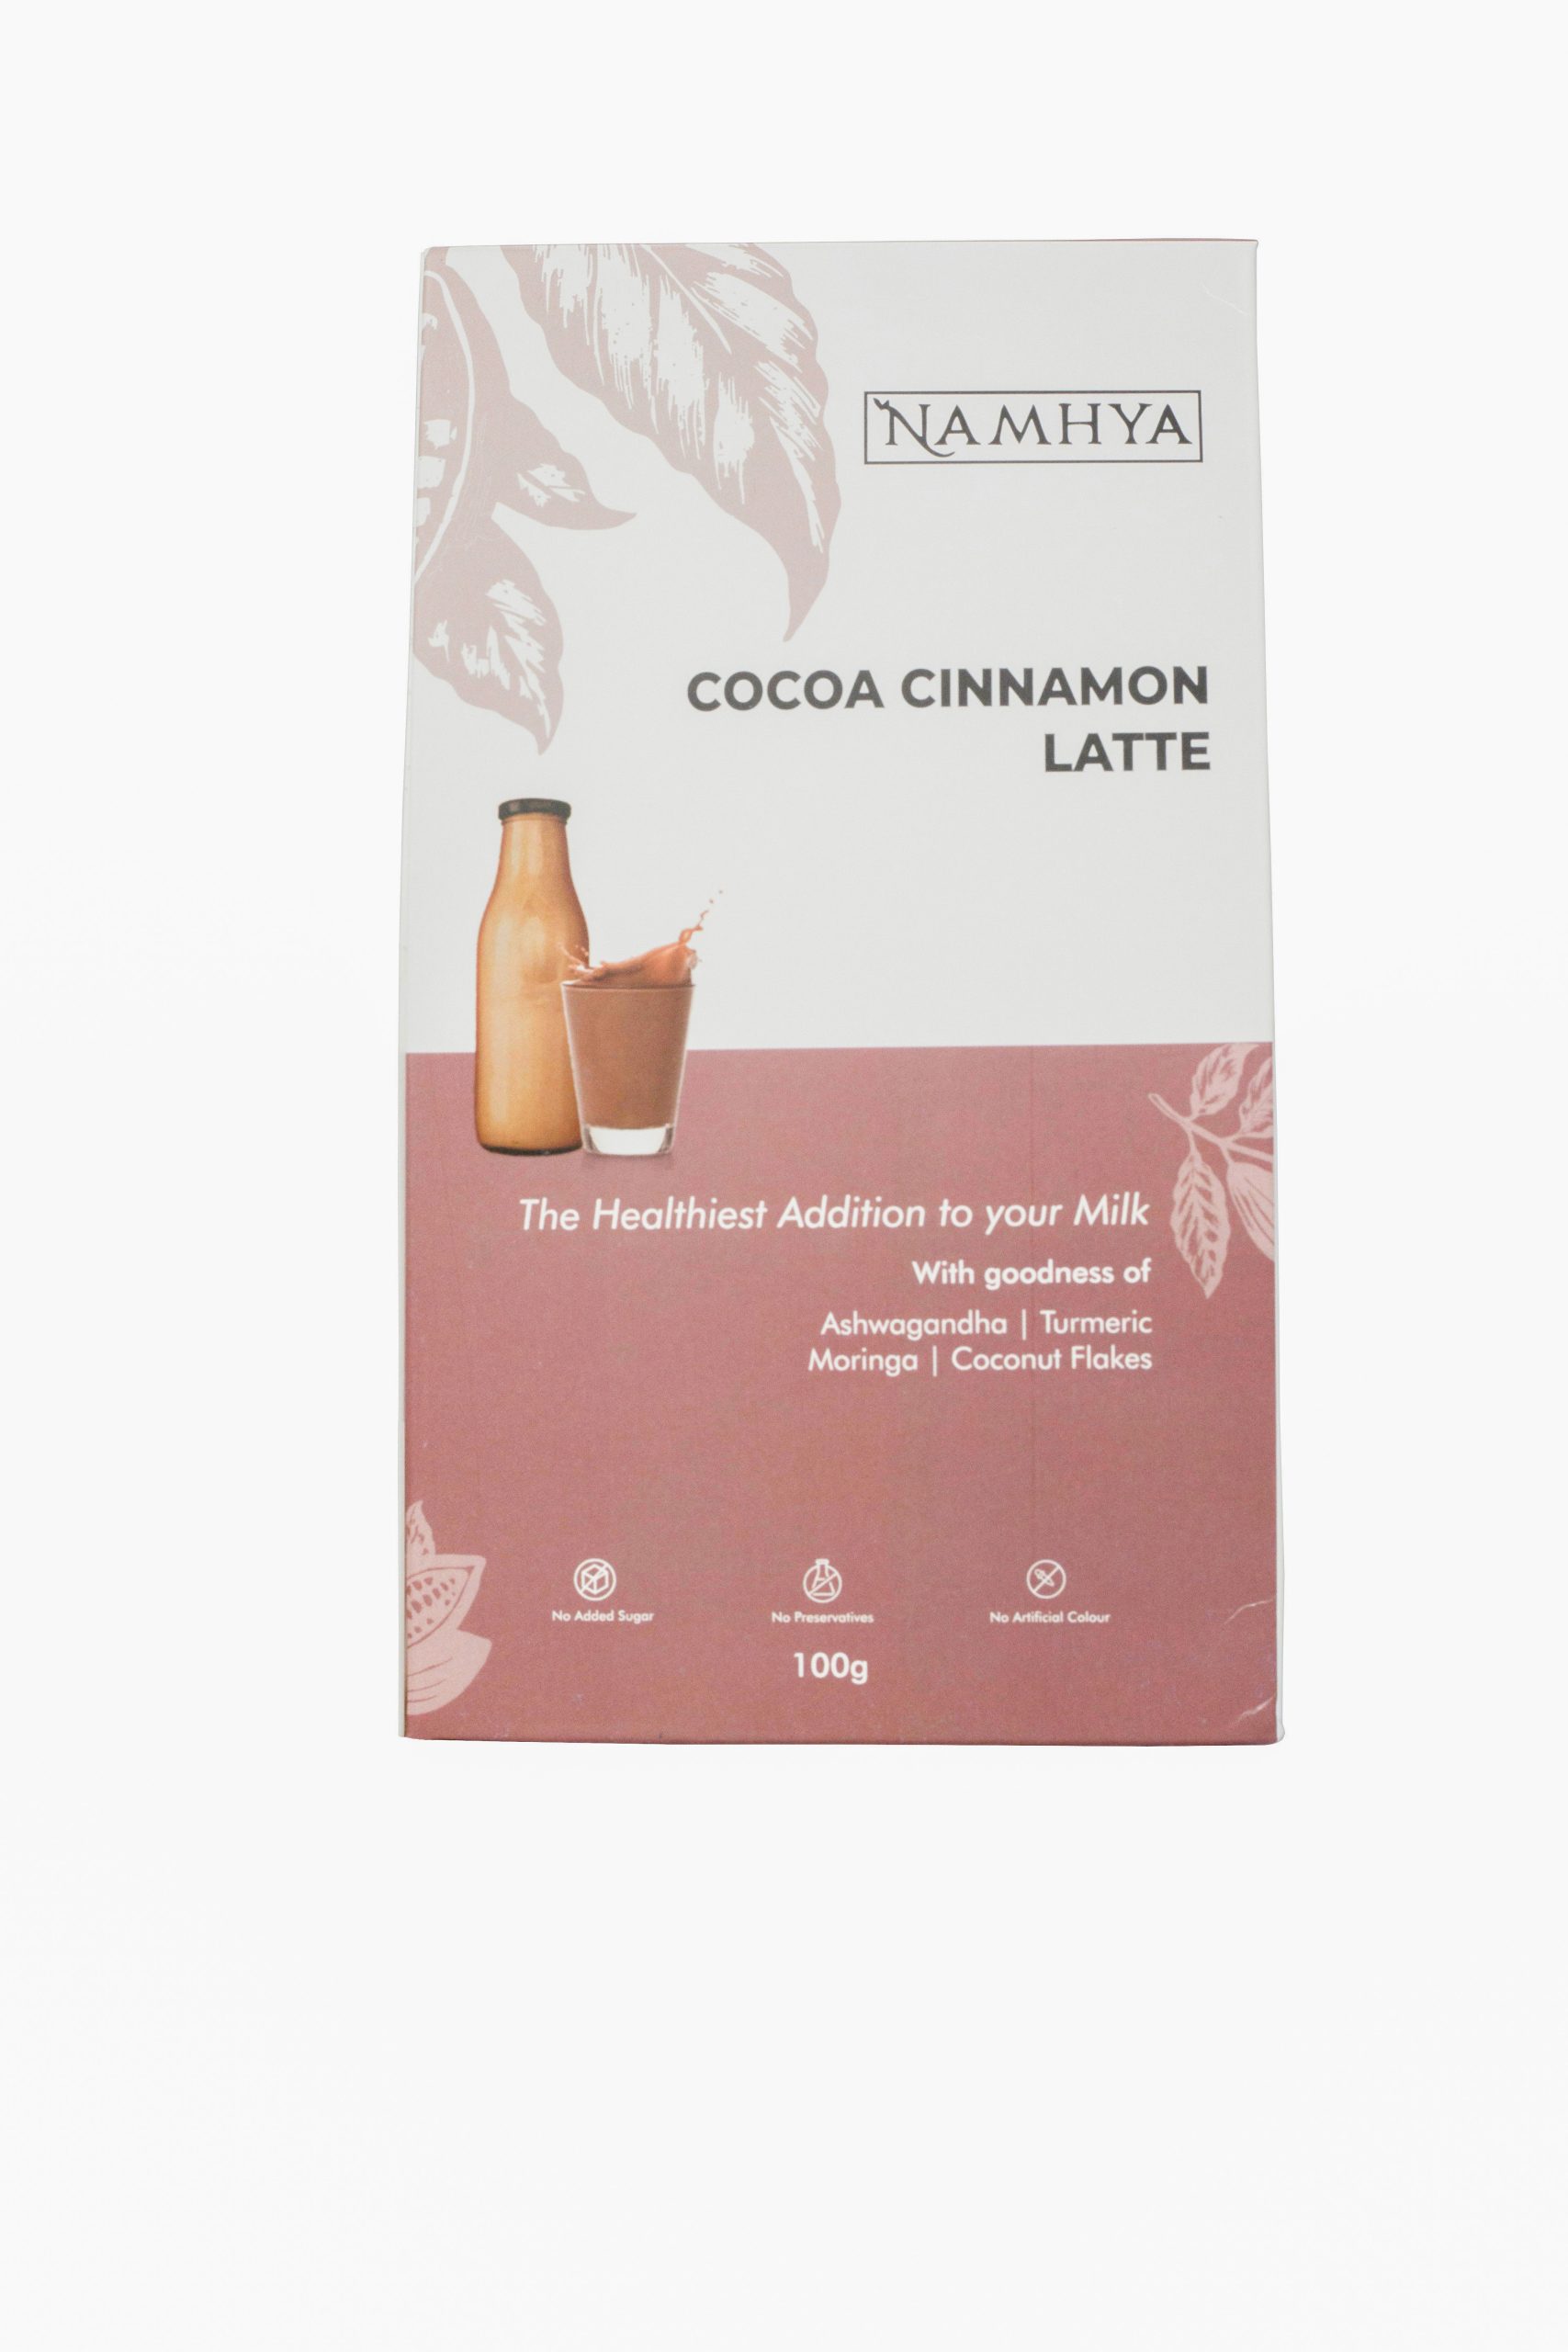 Product: Namhya Cocoa cinnamon Latte